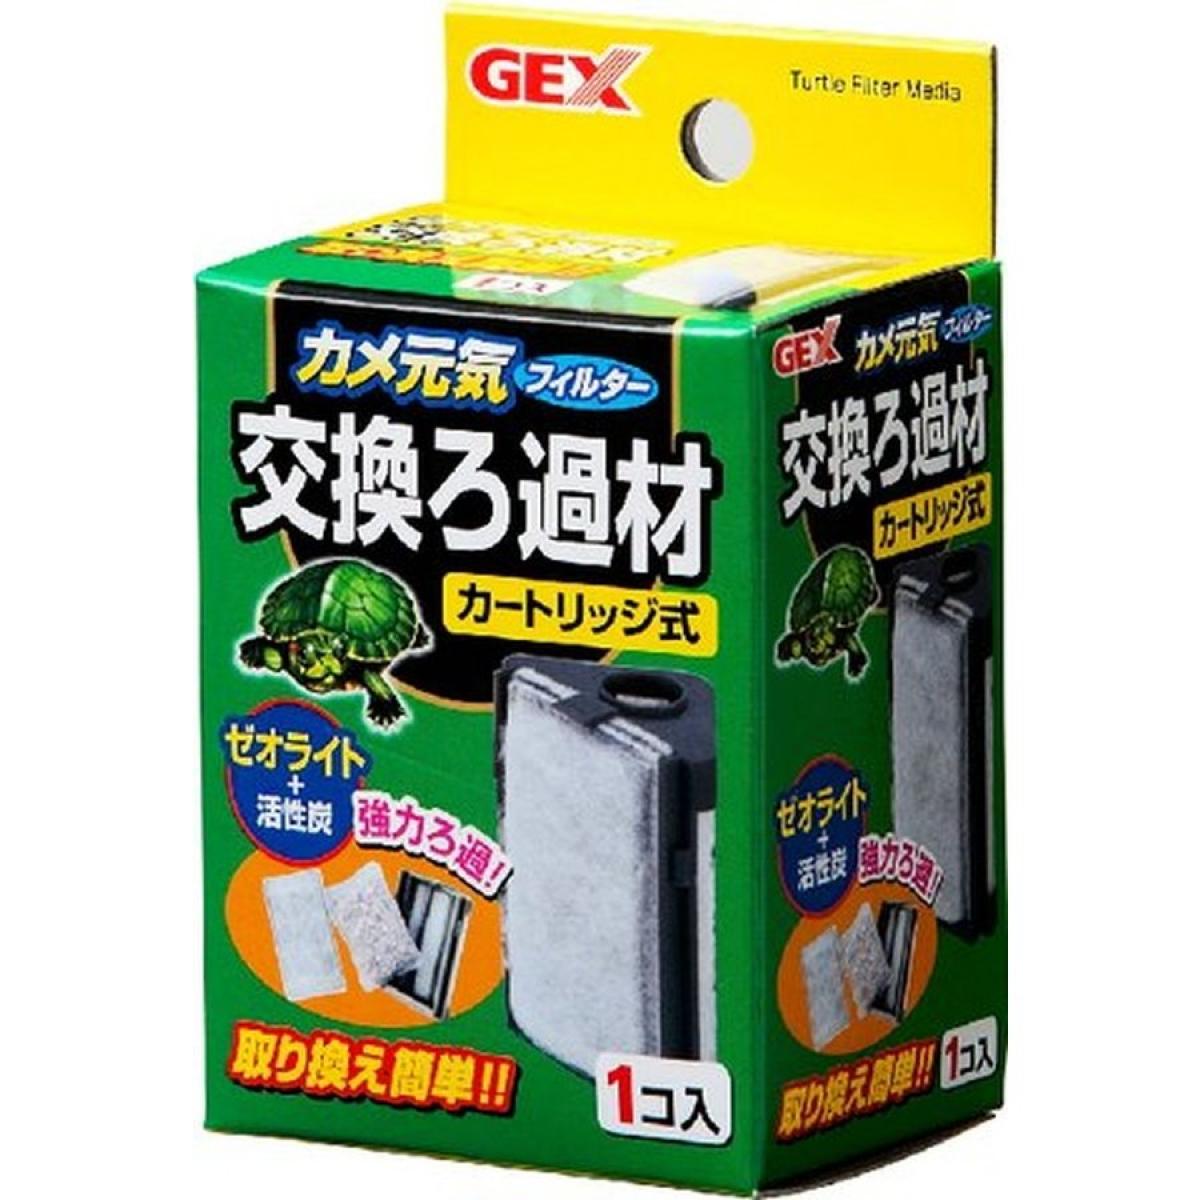 GEX черепаха изначальный . фильтр замена фильтрующий материал картридж тип черепаха изначальный . для 